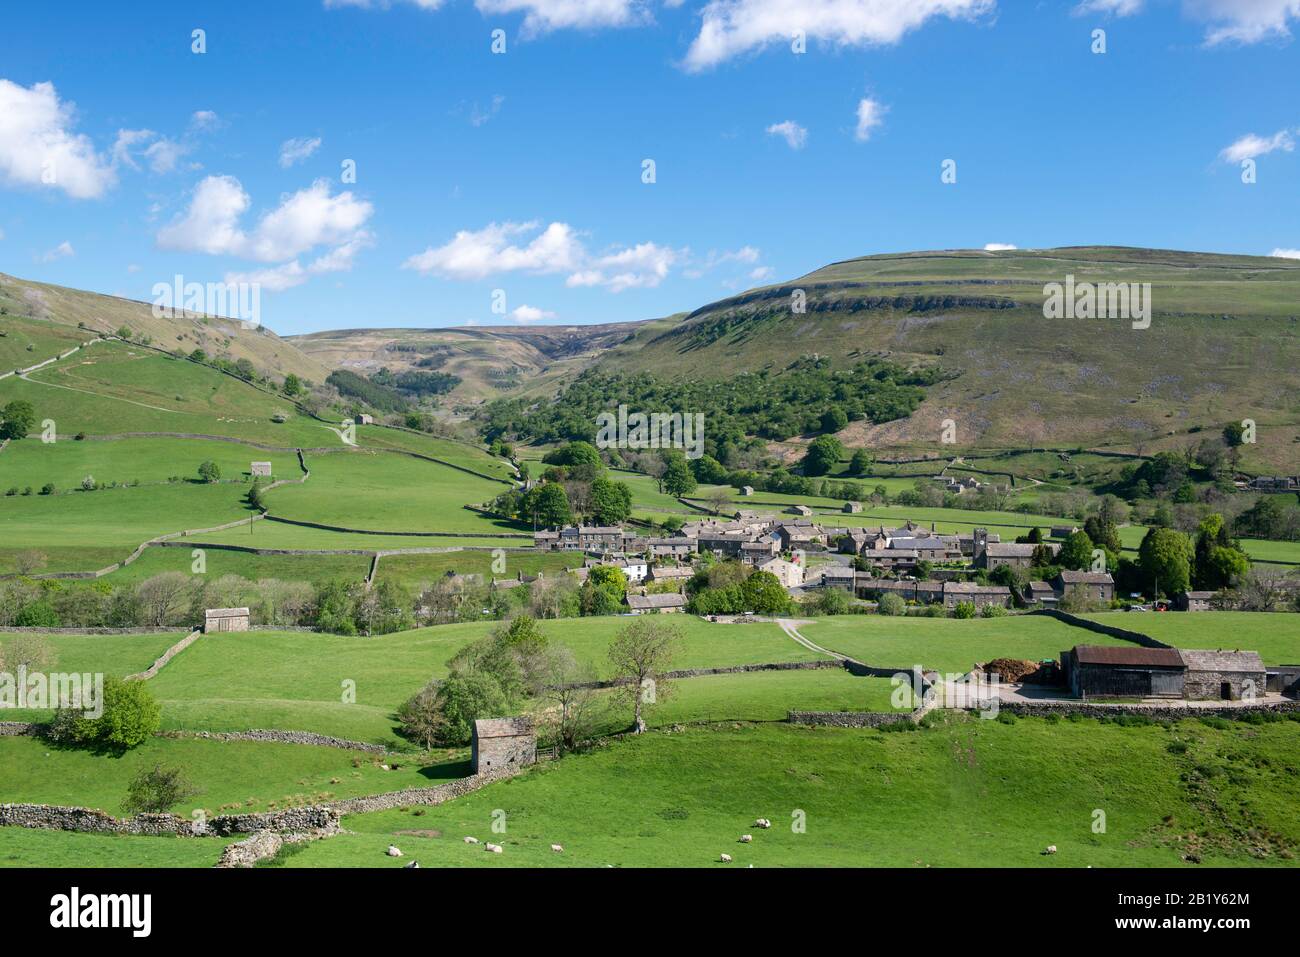 Vista de verano del pueblo de Yorkshire Dales de Muker en Swaledale rodeado por un paisaje clásico de Yorkshire de prados y páramos Foto de stock